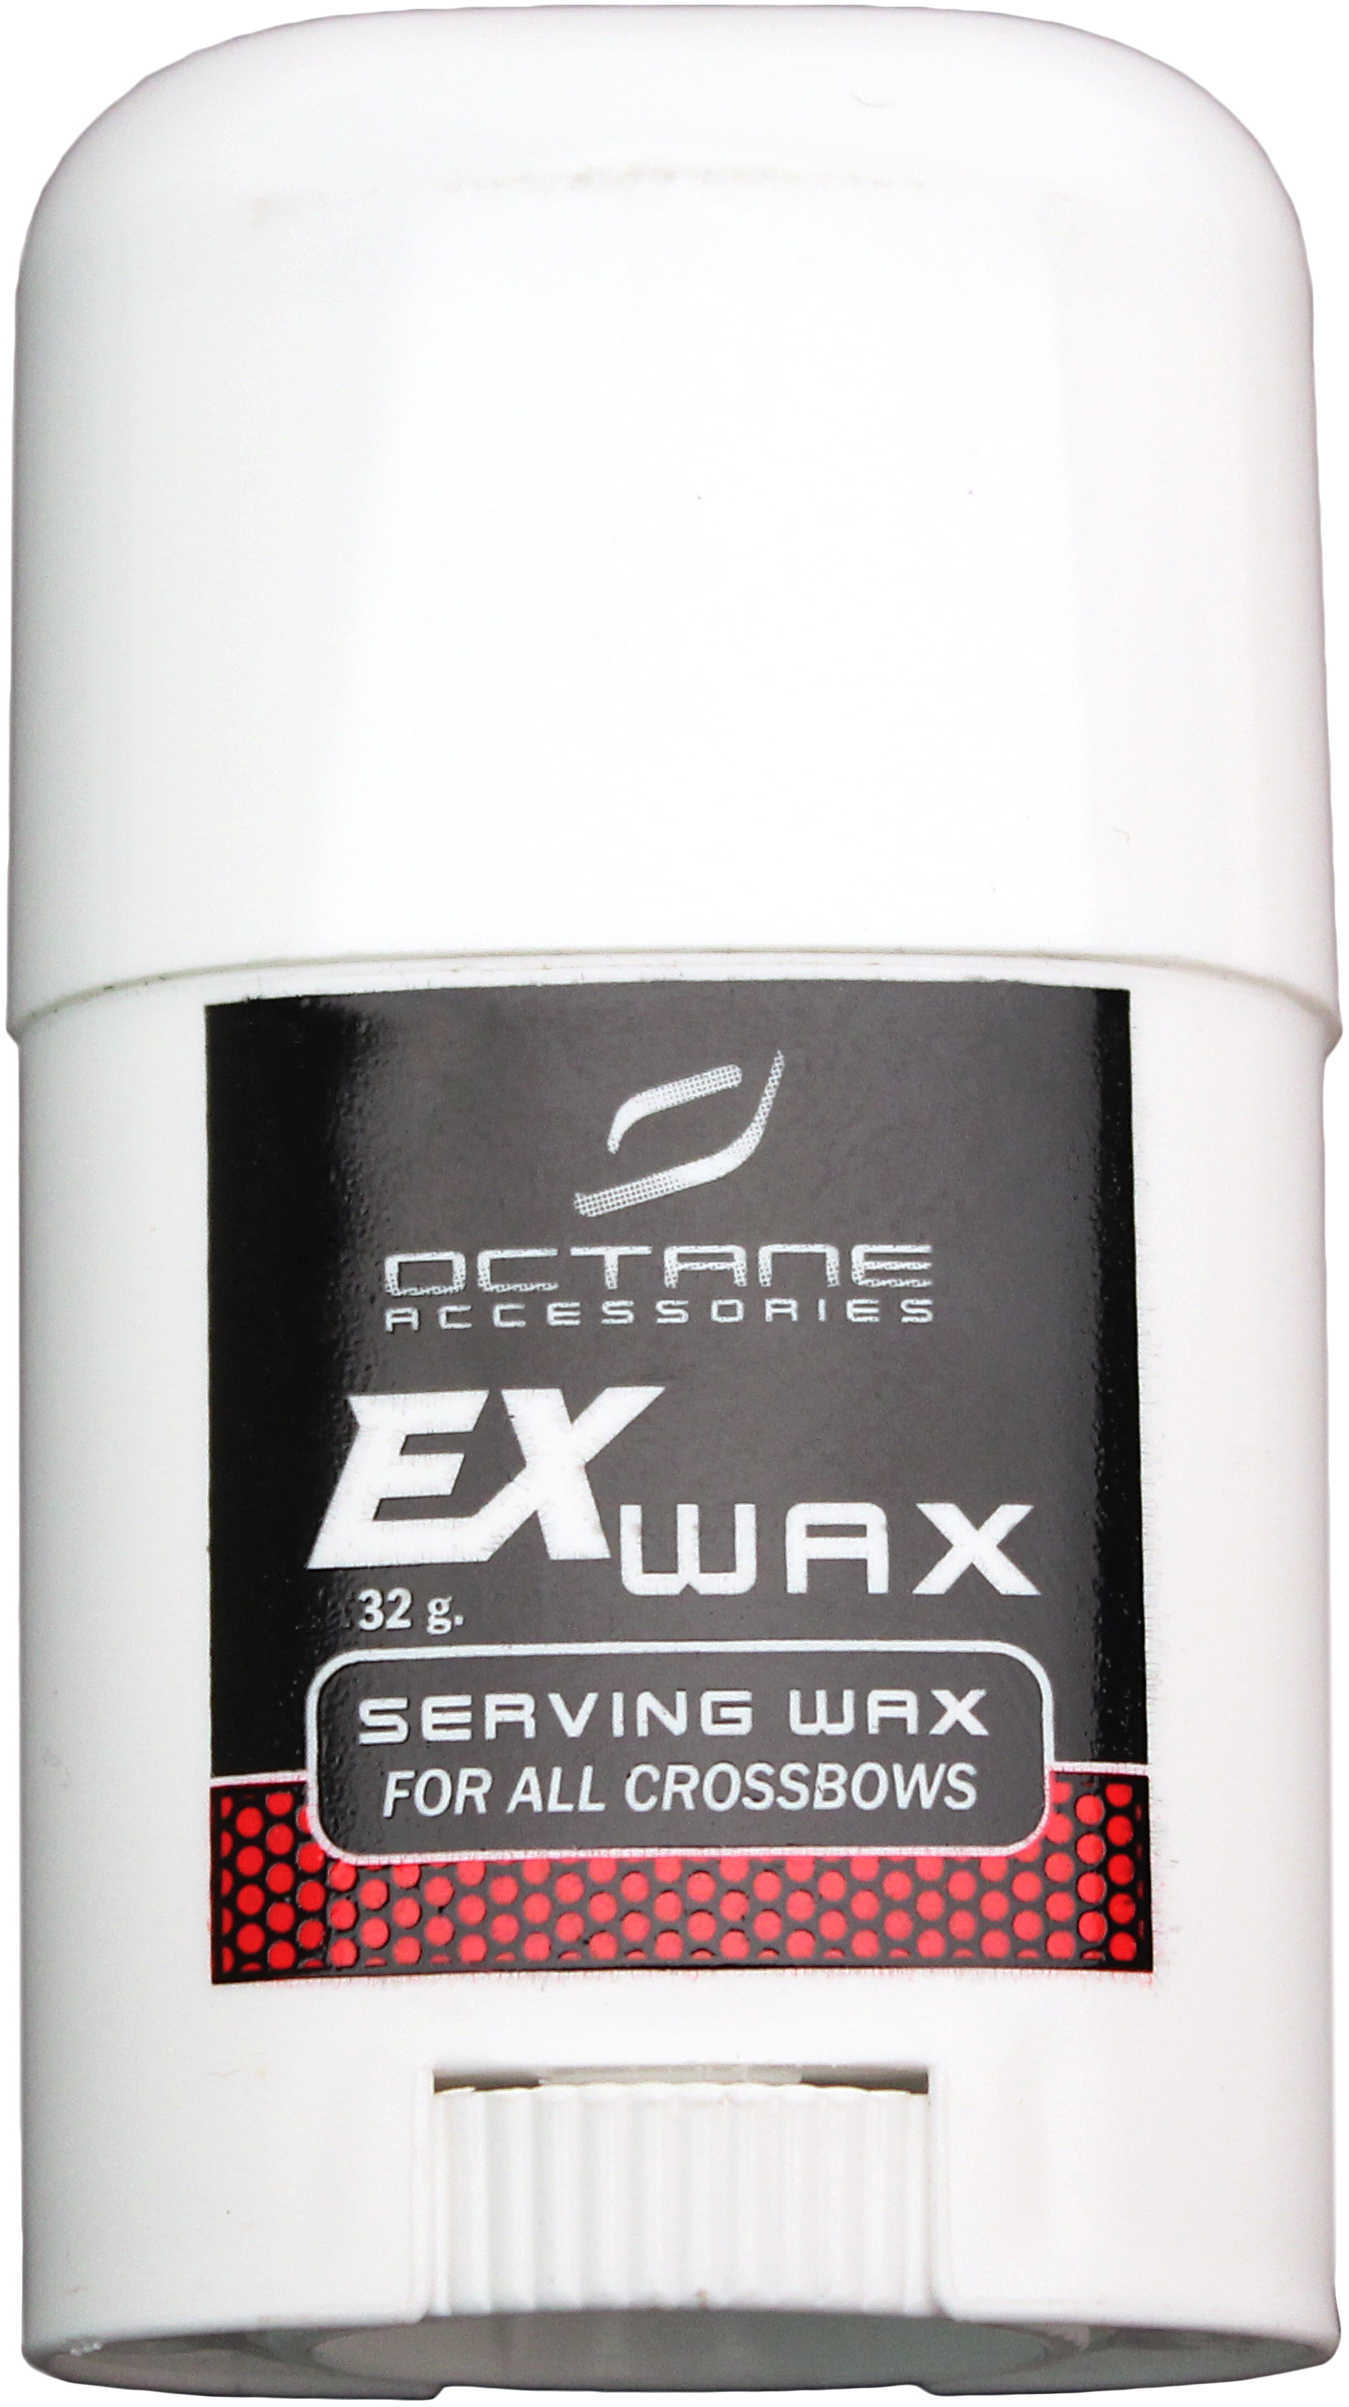 Excalibur Serving Wax 2009